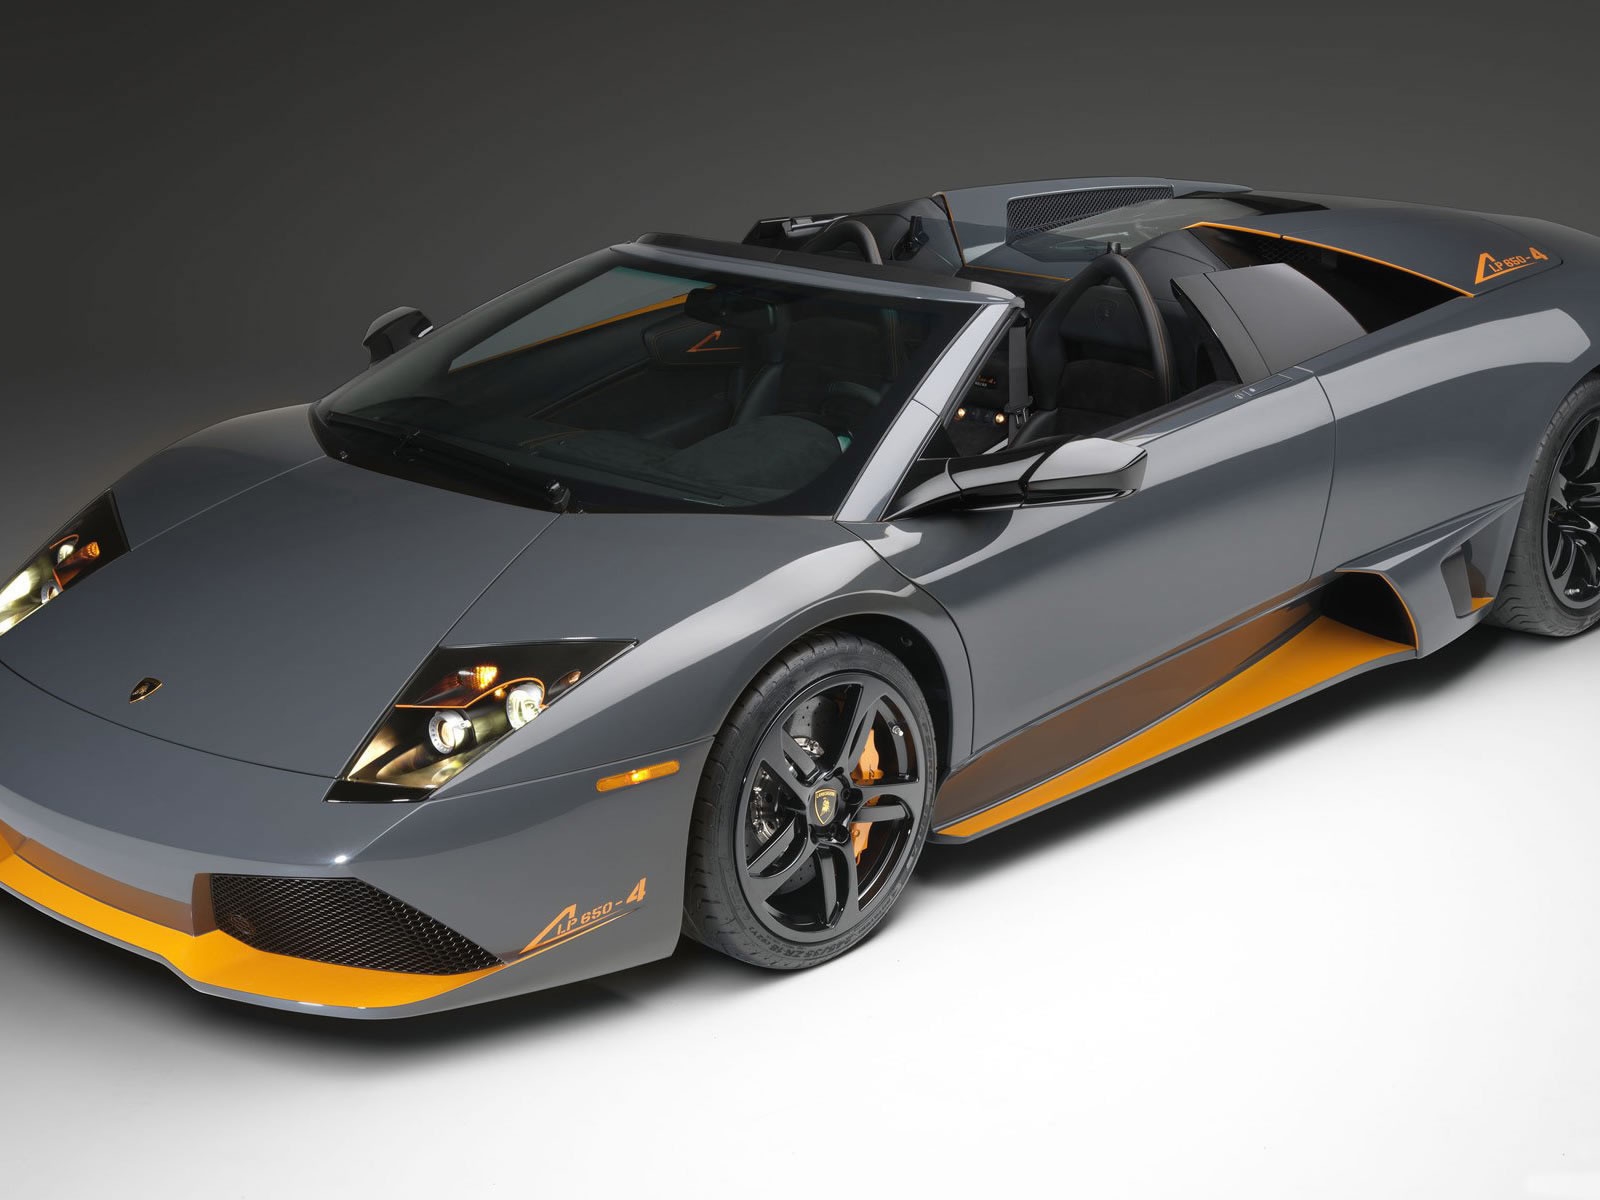 Lamborghini lp 650 Front Angle for 1600 x 1200 resolution